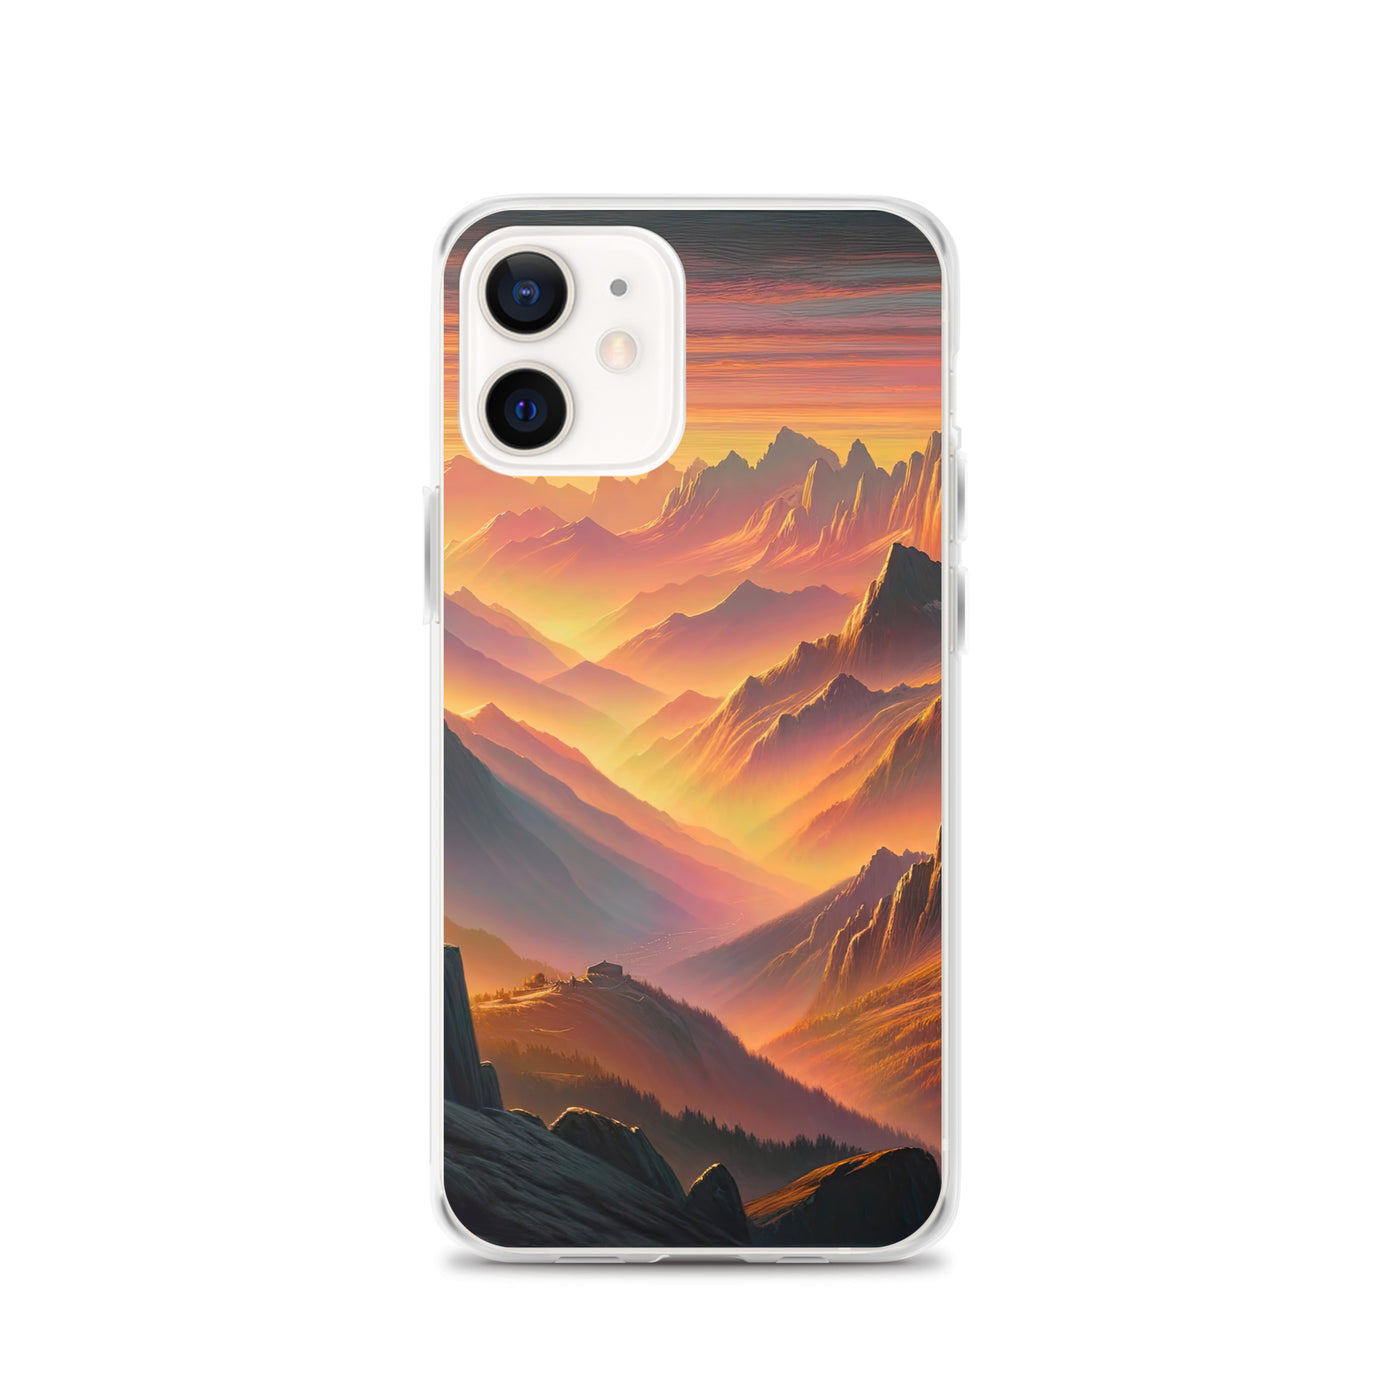 Ölgemälde der Alpen in der goldenen Stunde mit Wanderer, Orange-Rosa Bergpanorama - iPhone Schutzhülle (durchsichtig) wandern xxx yyy zzz iPhone 12